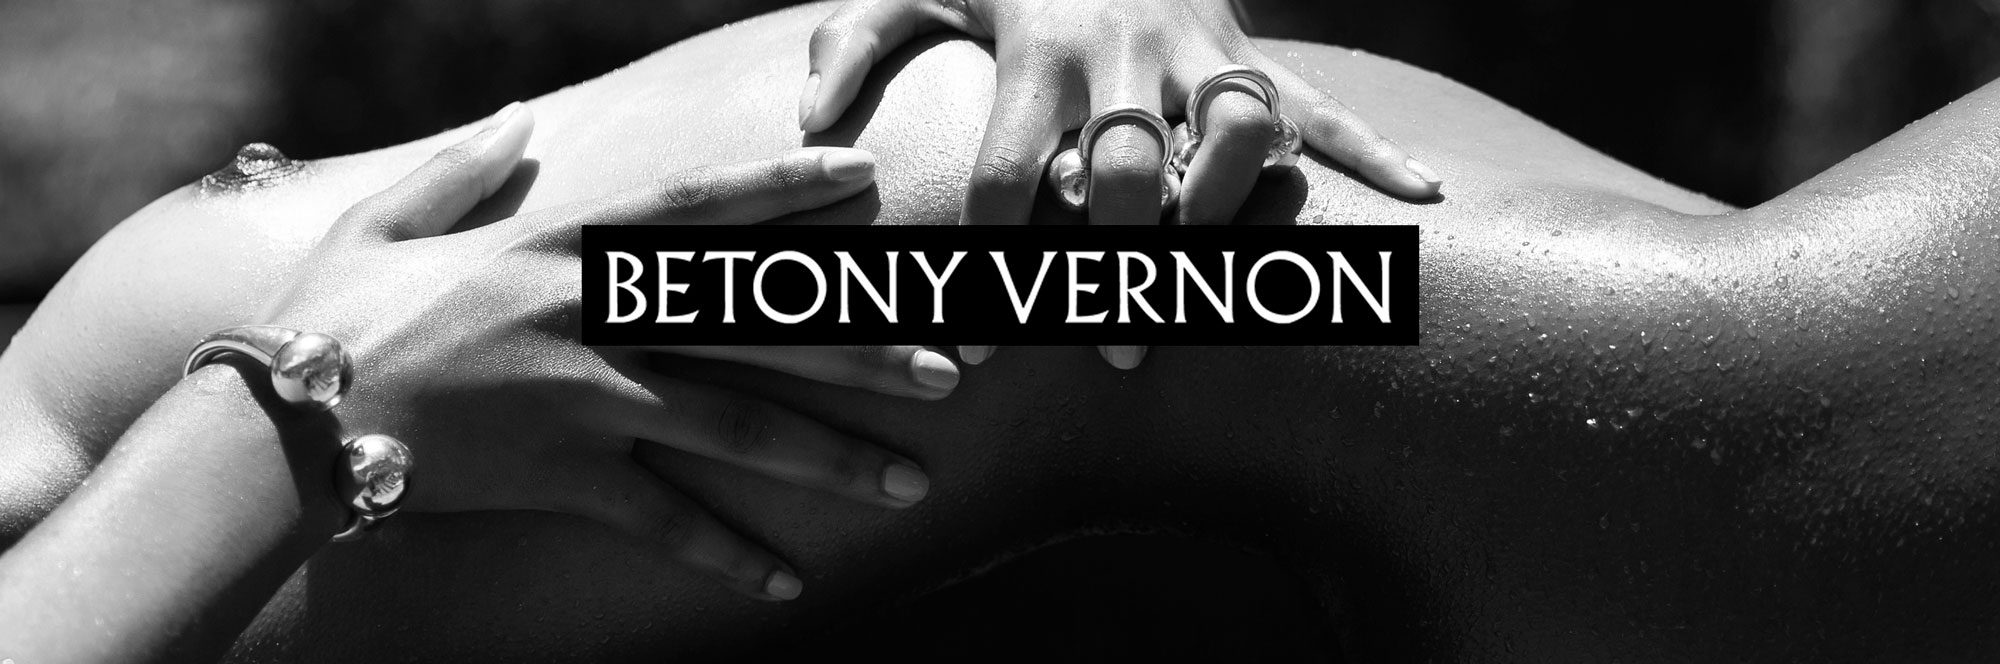 Betony Vernon header